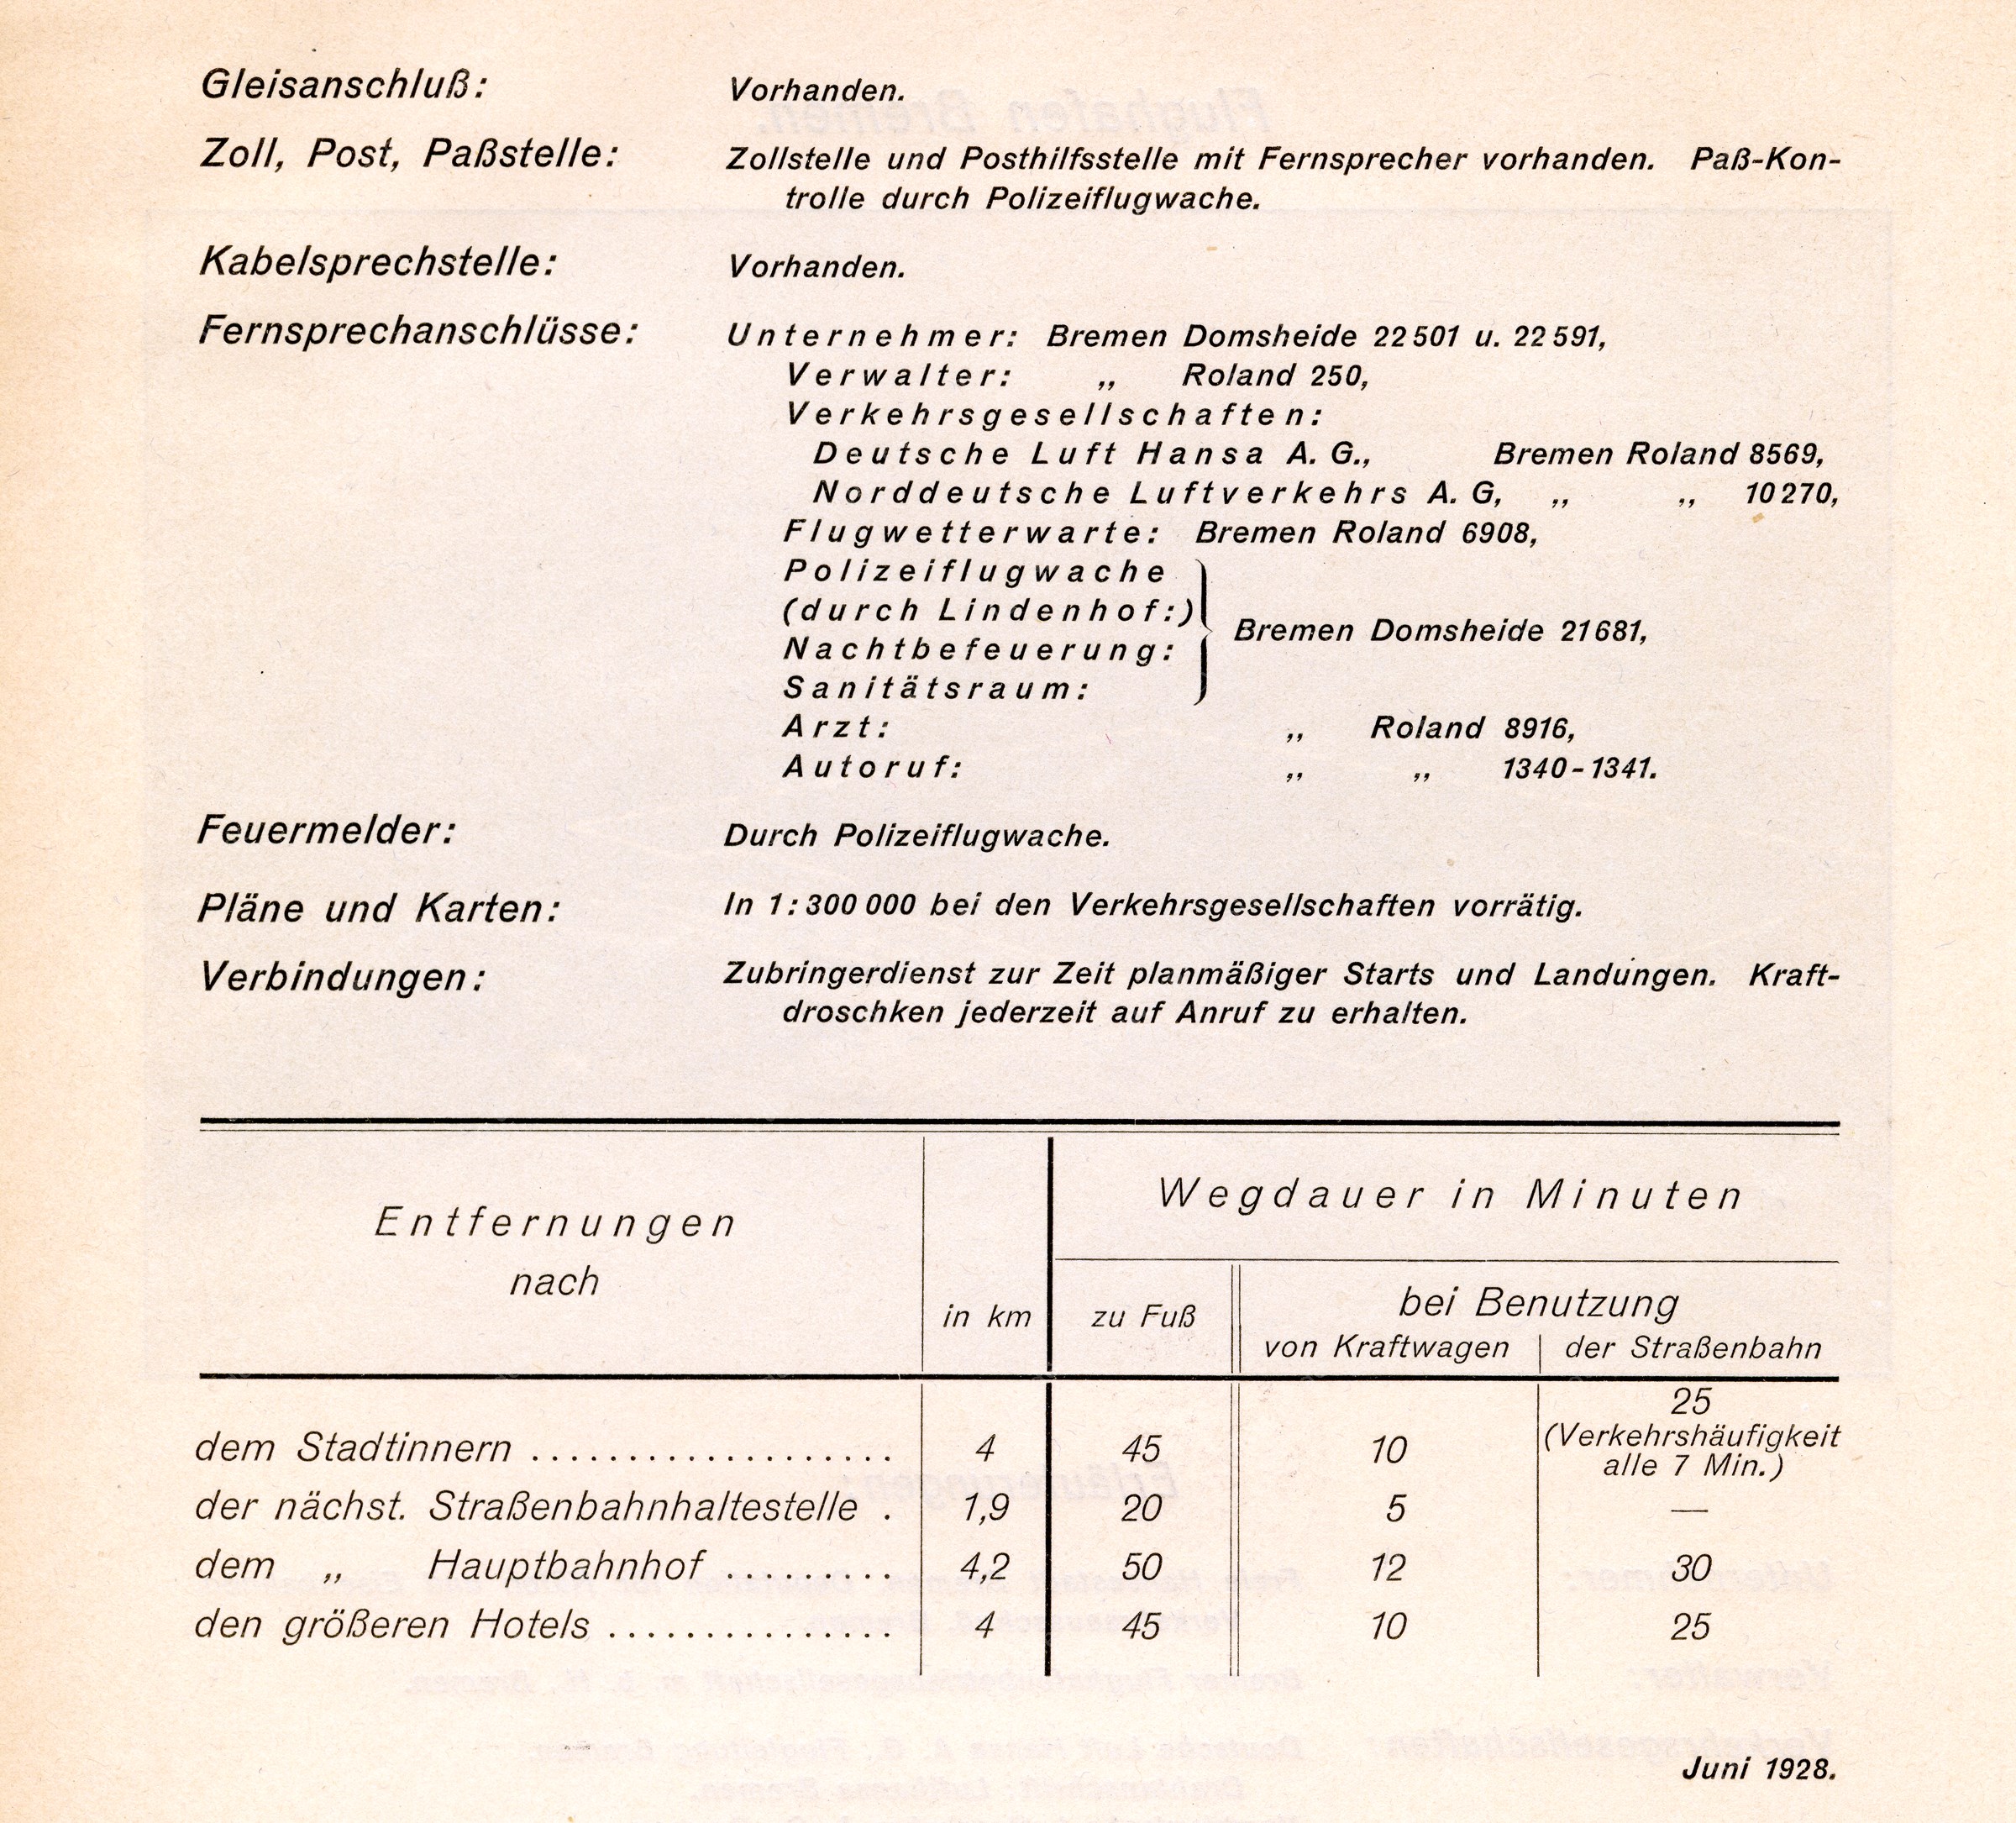 Flugplatz Bremen - Flughandbuch für das Deutsche Reich